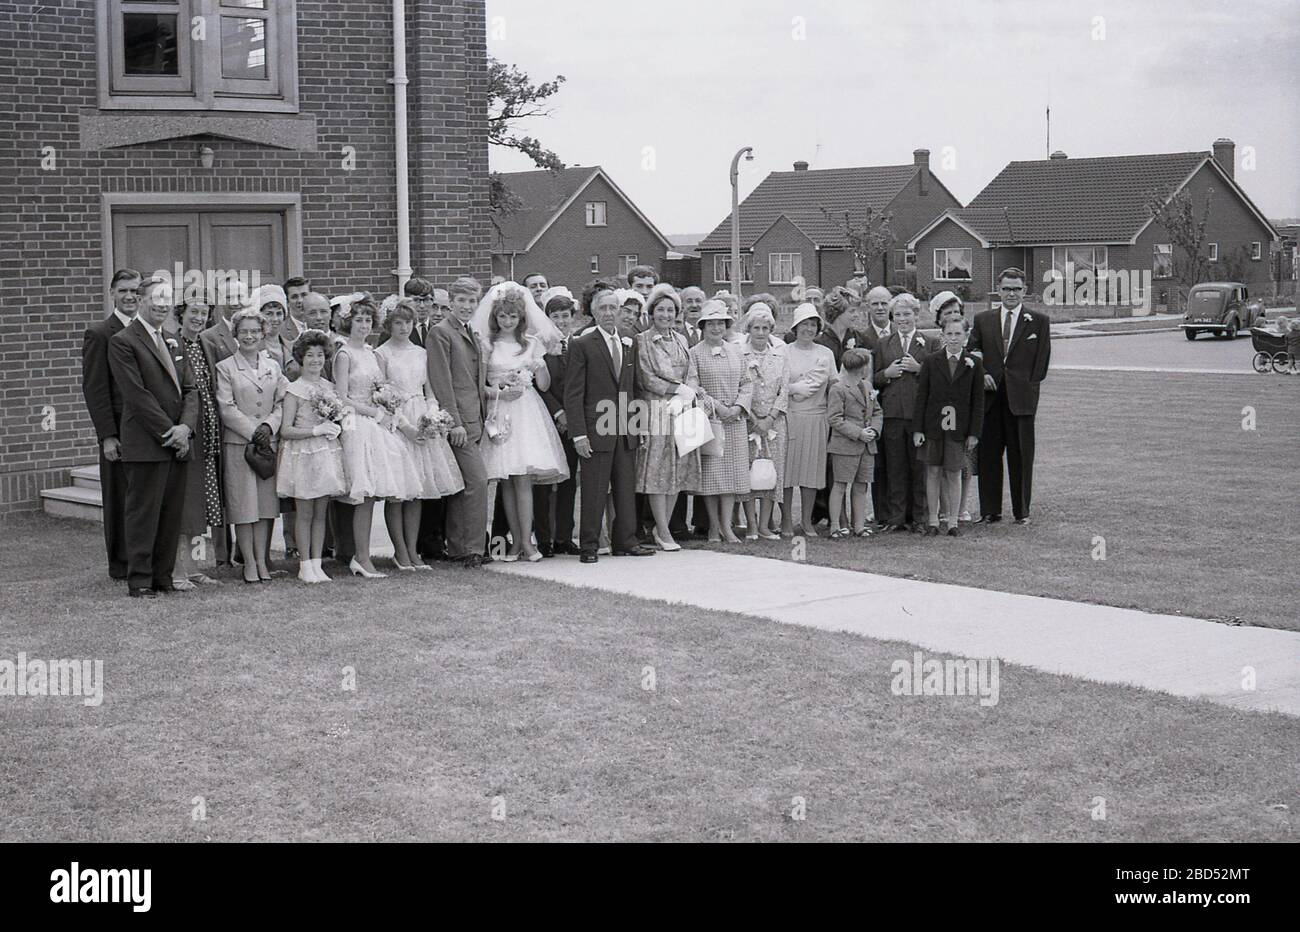 Années 60, historique, sur un immobilier de banlieue, à l'extérieur d'une église moderne, une photo de groupe d'une mariée et d'une marié d'adolescence et de leurs invités de mariage, avec une voiture de voiture et un landau de l'époque à distance, Angleterre, Royaume-Uni. Banque D'Images